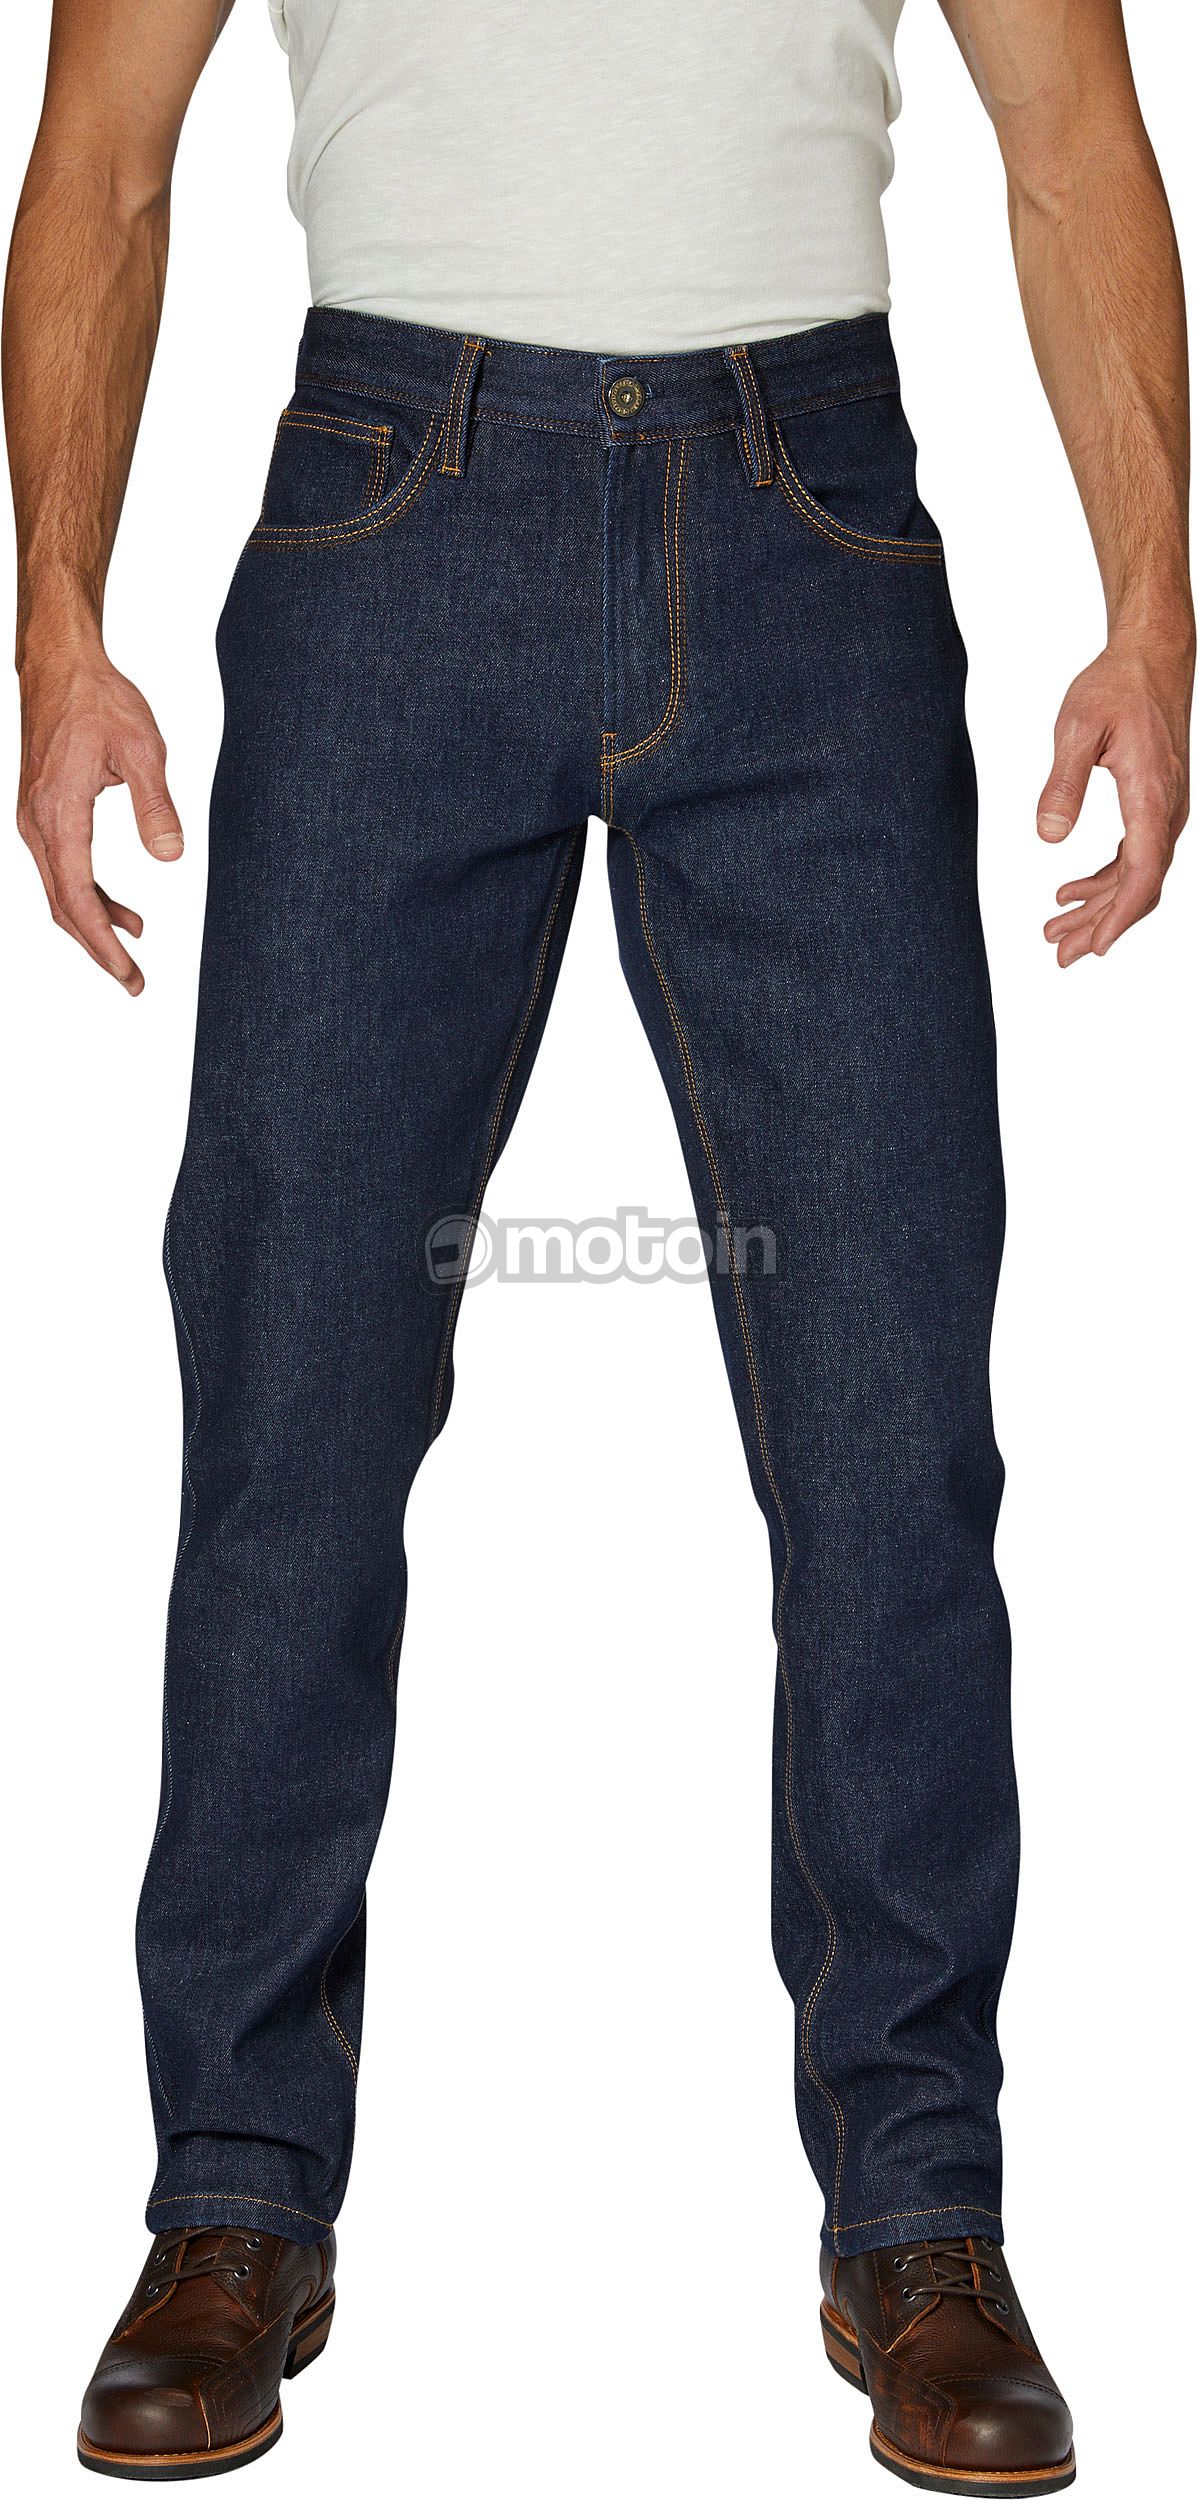 Rokker Revolution Slim, jeans impermeabili